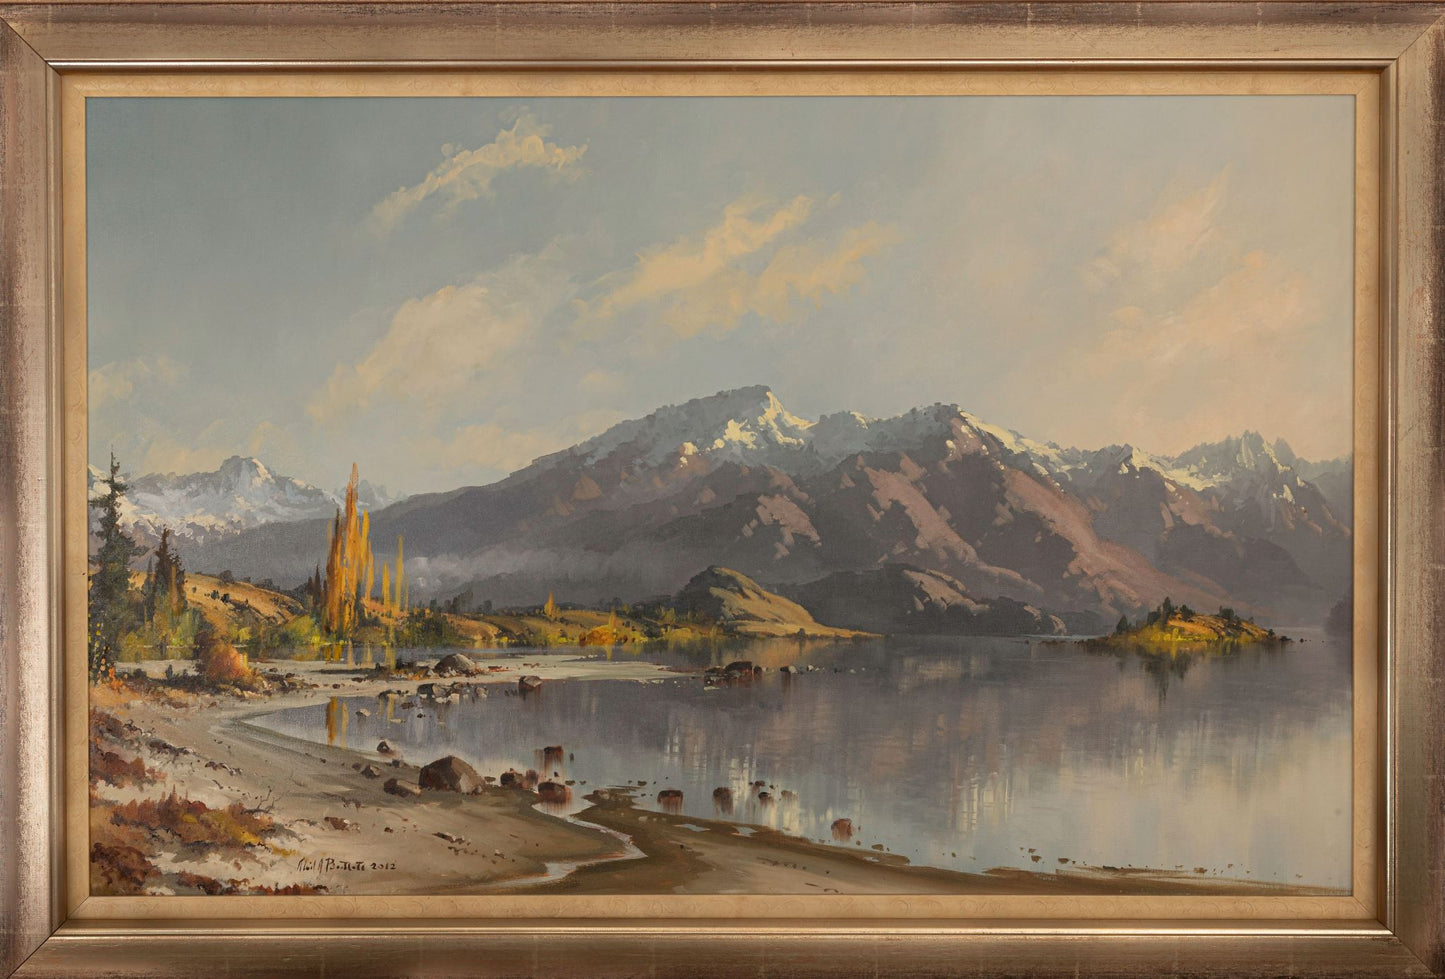 Framed Oil Painting by Neil J Bartlett Wanaka NZ Silver Fern Gallery